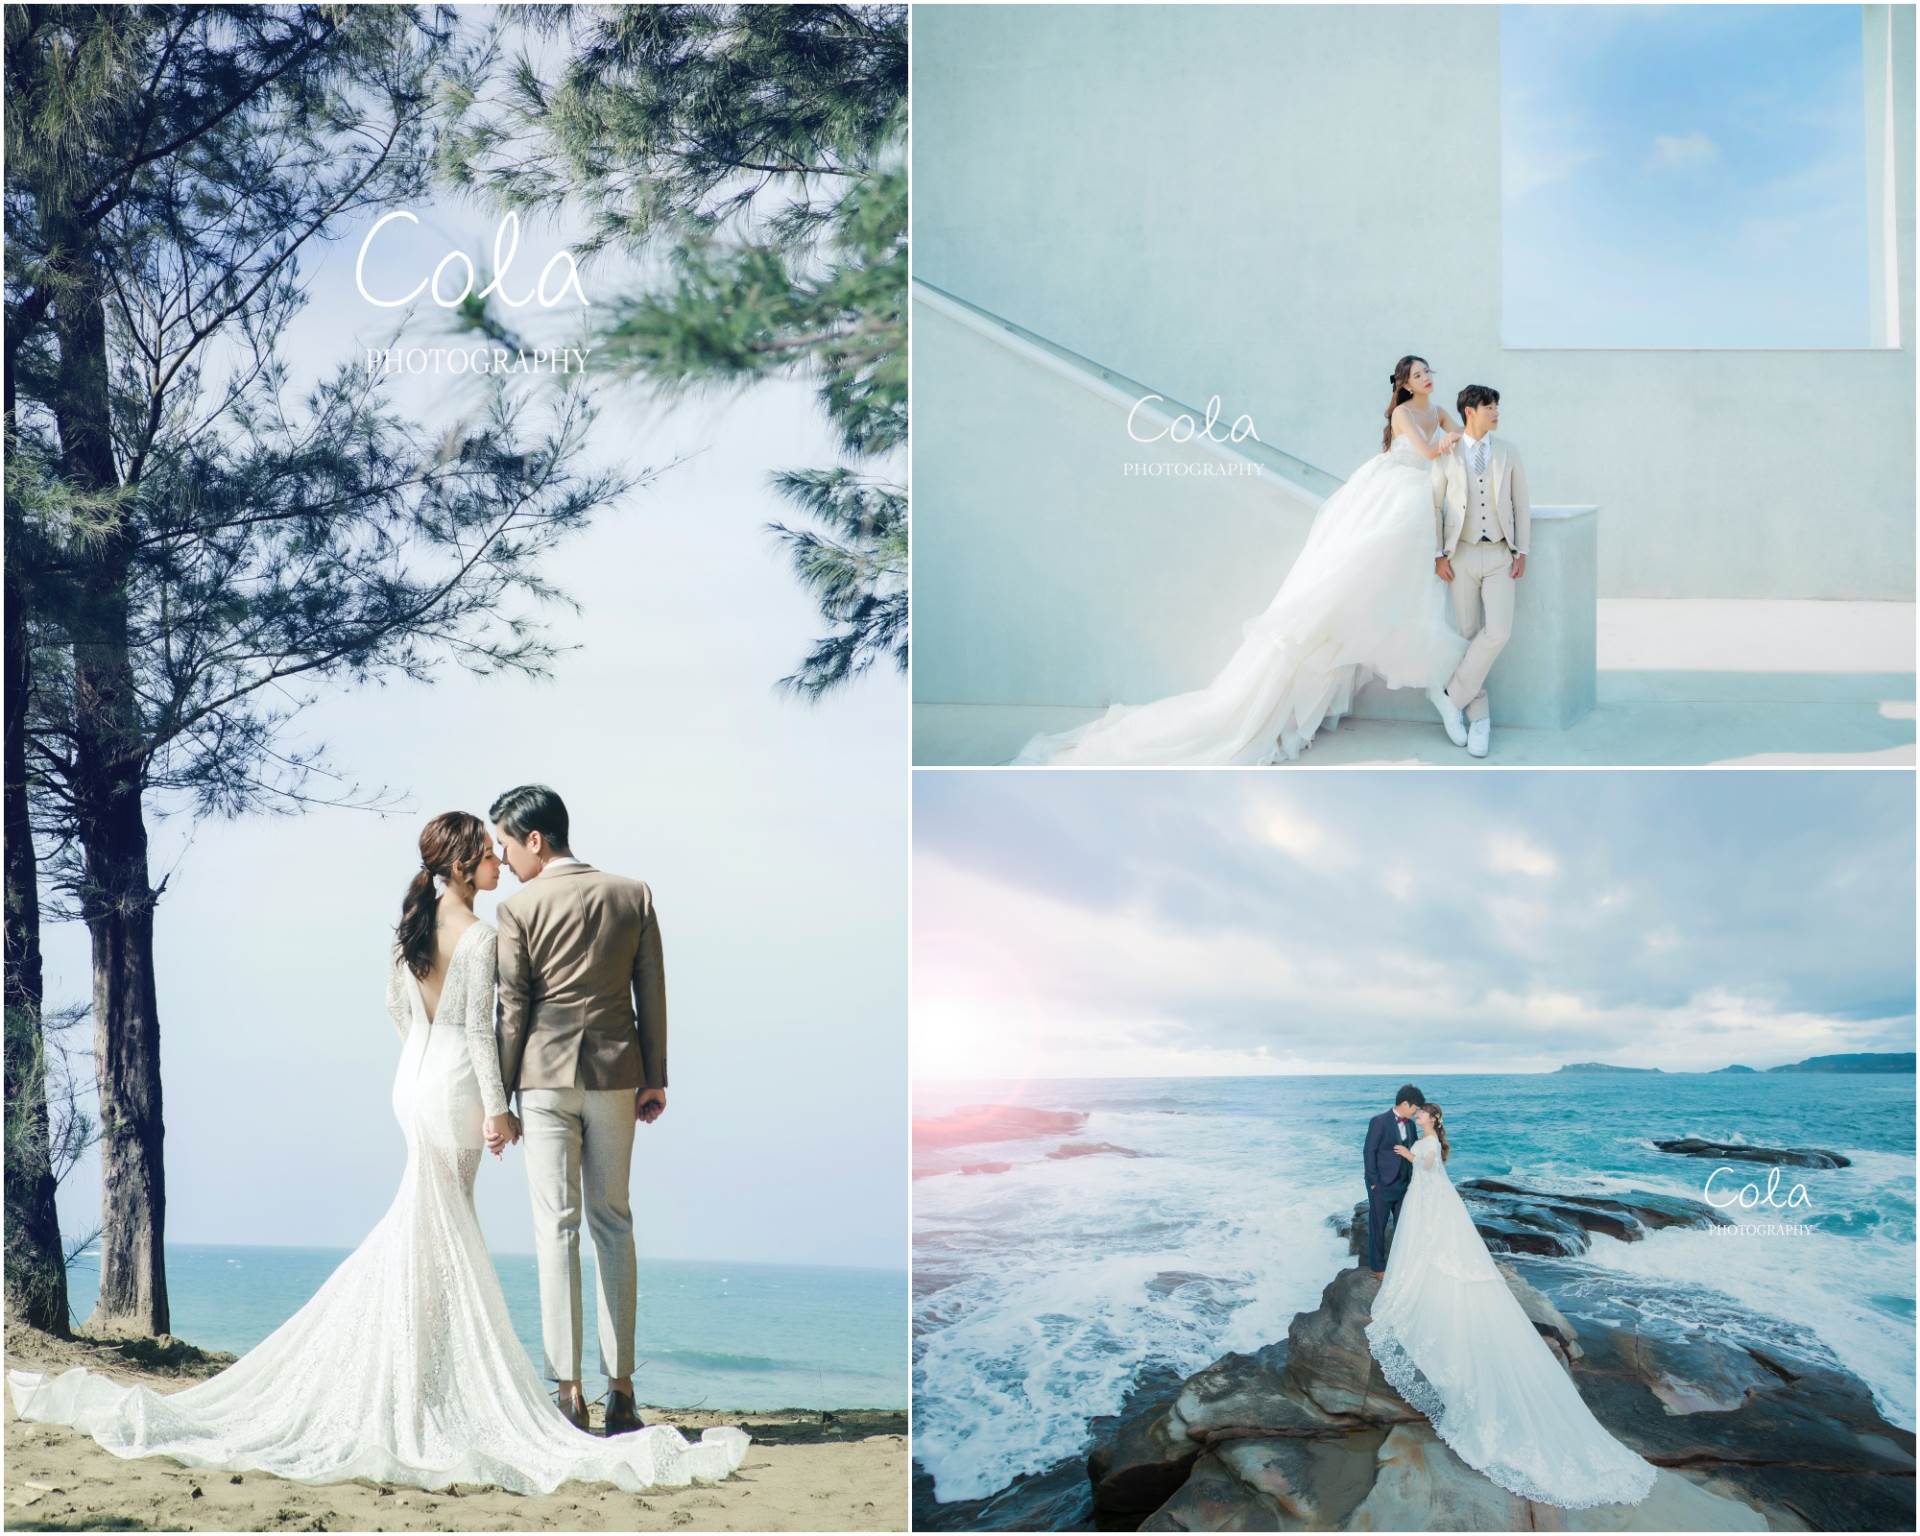 婚紗攝影,韓式婚紗,台北婚紗攝影,婚紗攝影推薦,婚紗攝影師